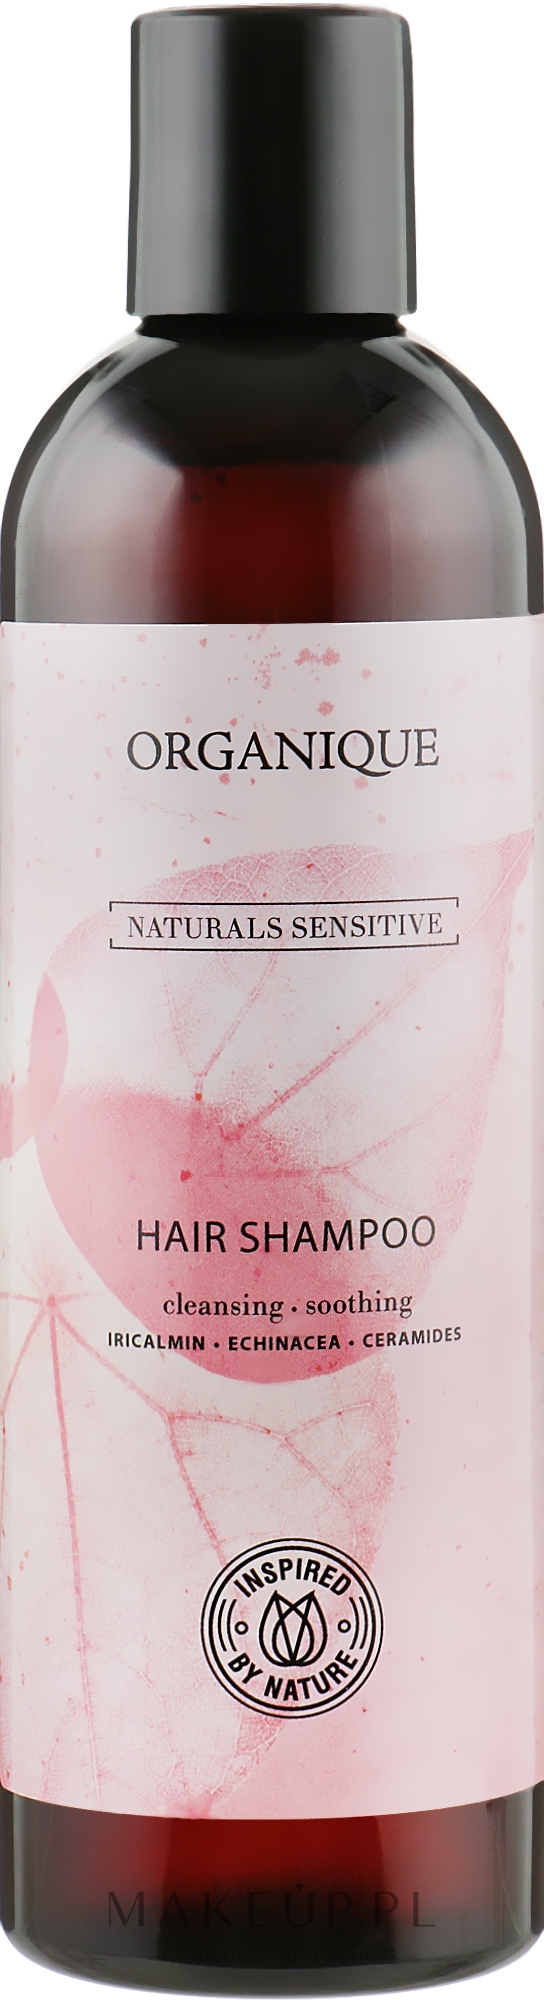 Delikatny szampon wzmacniający do włosów - Organique Naturals Sensitive — Zdjęcie 250 ml